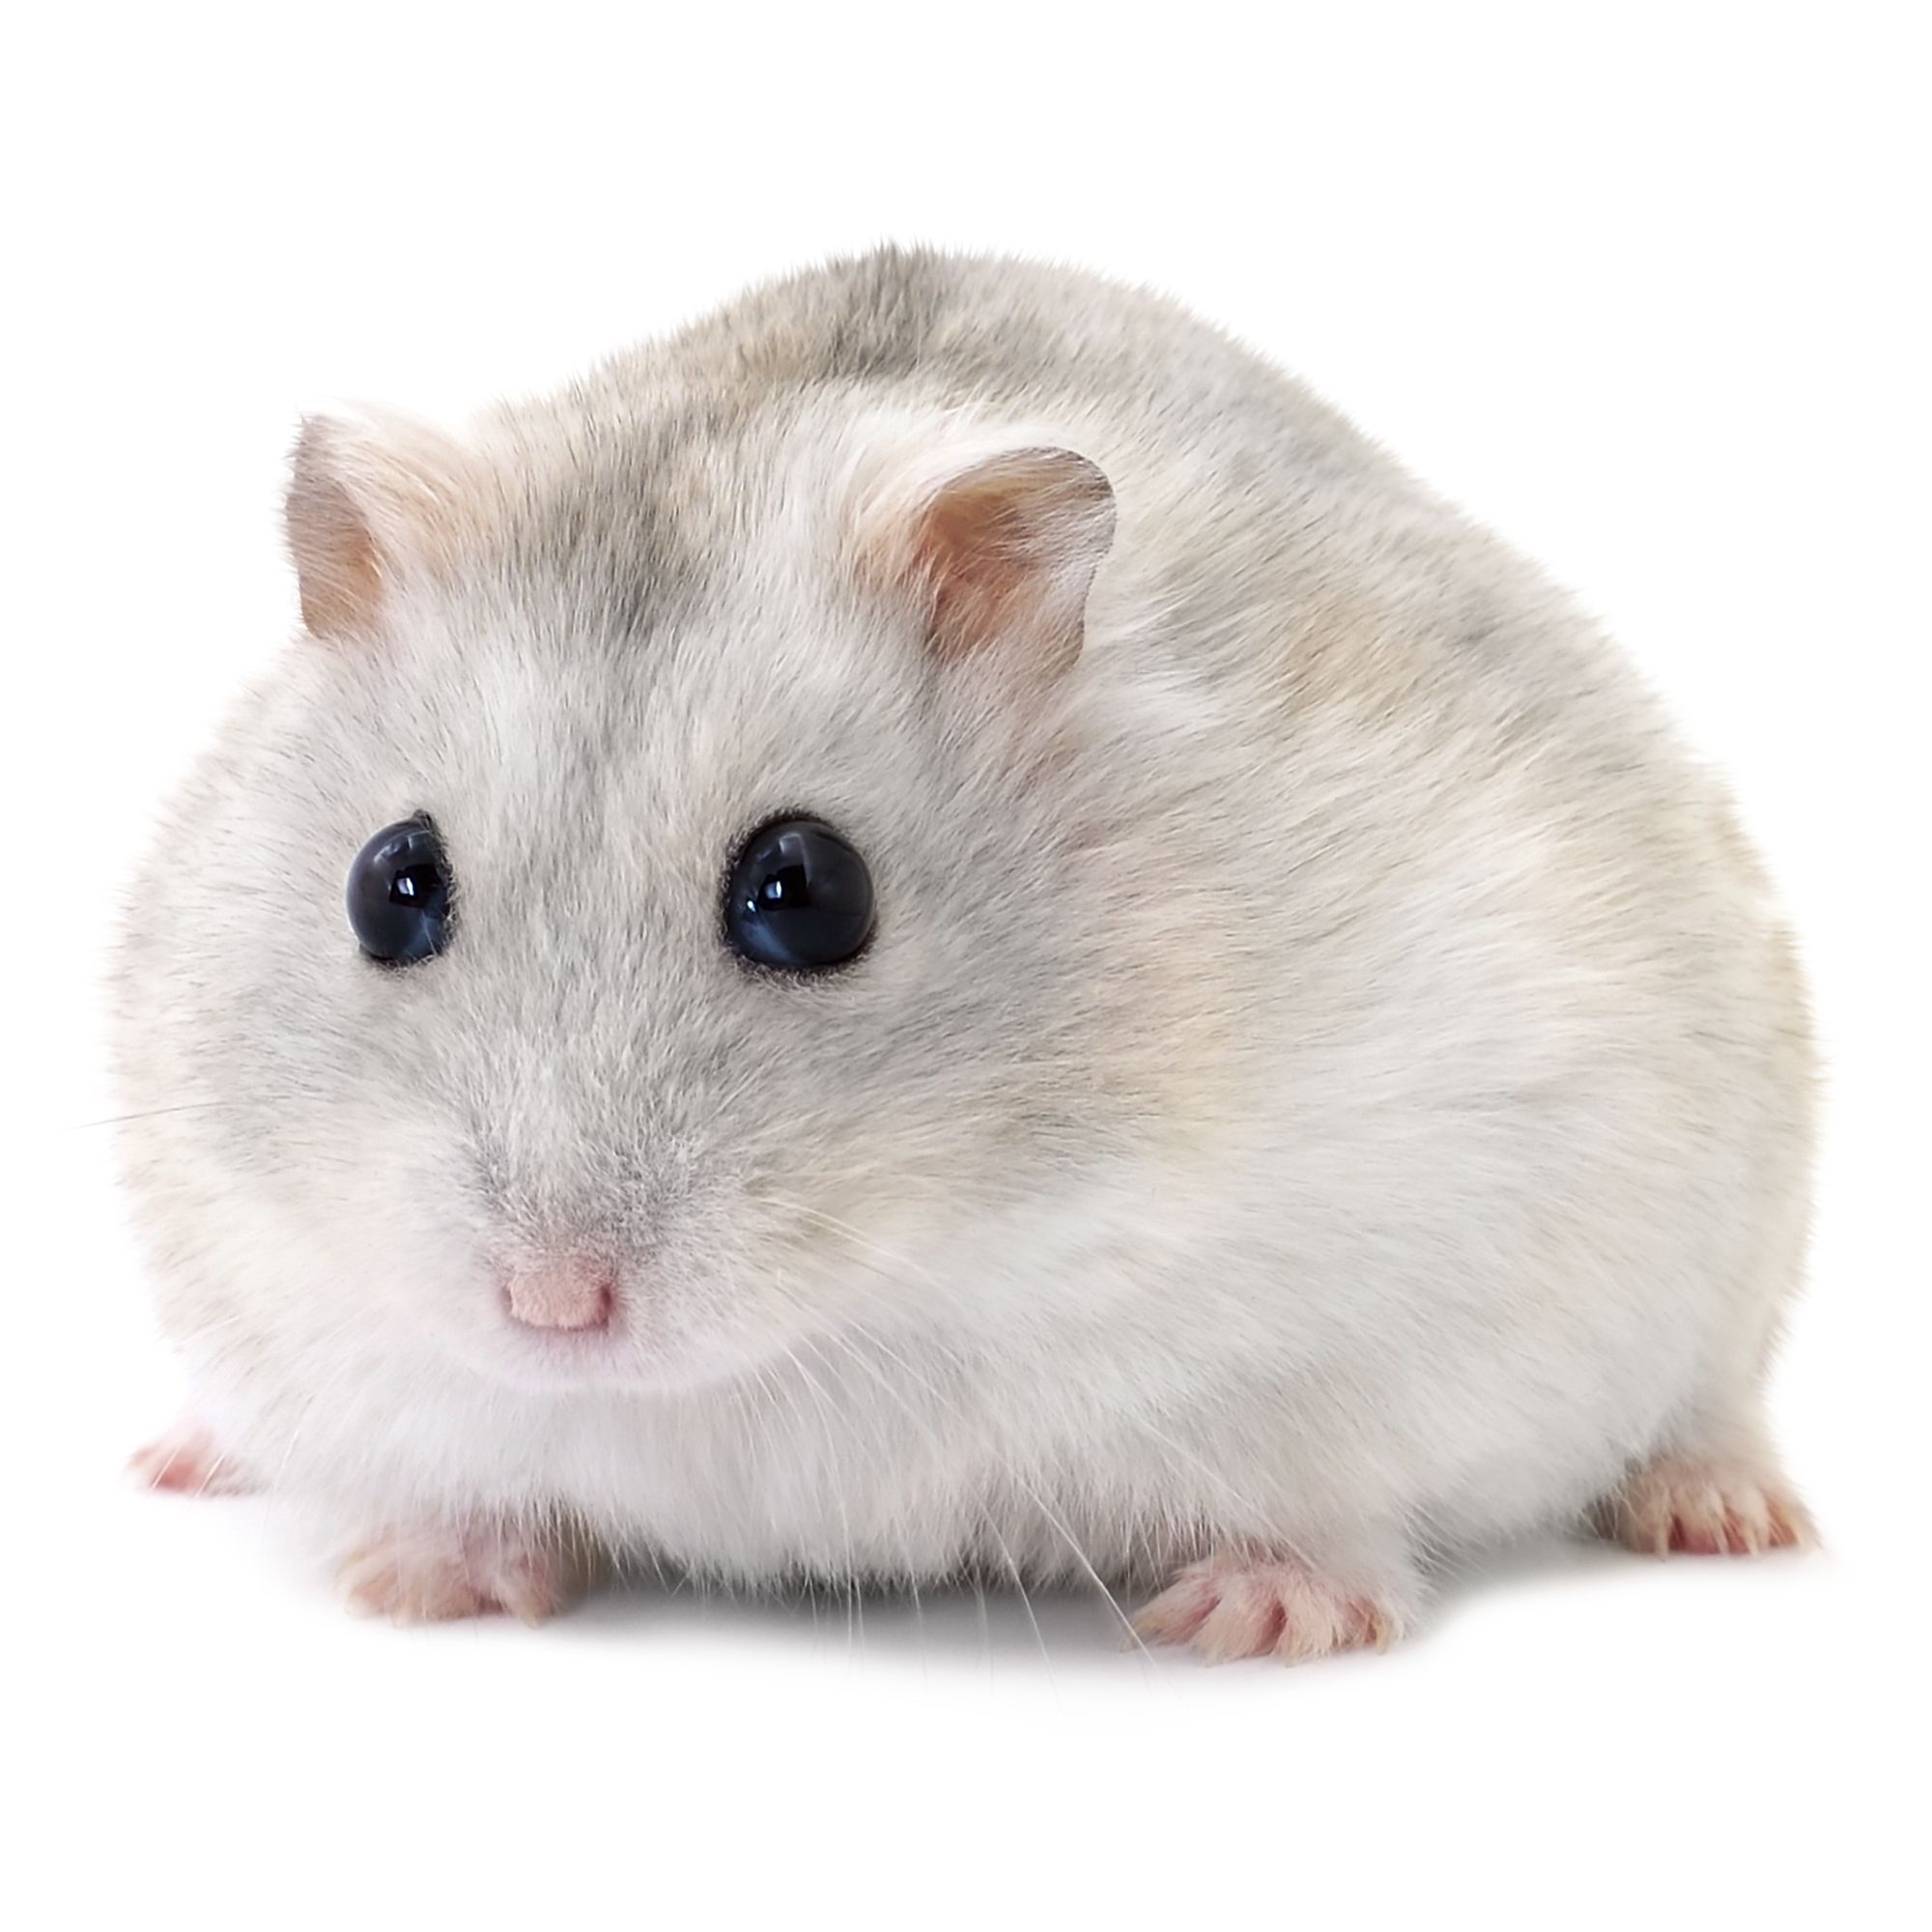 male russian dwarf hamster